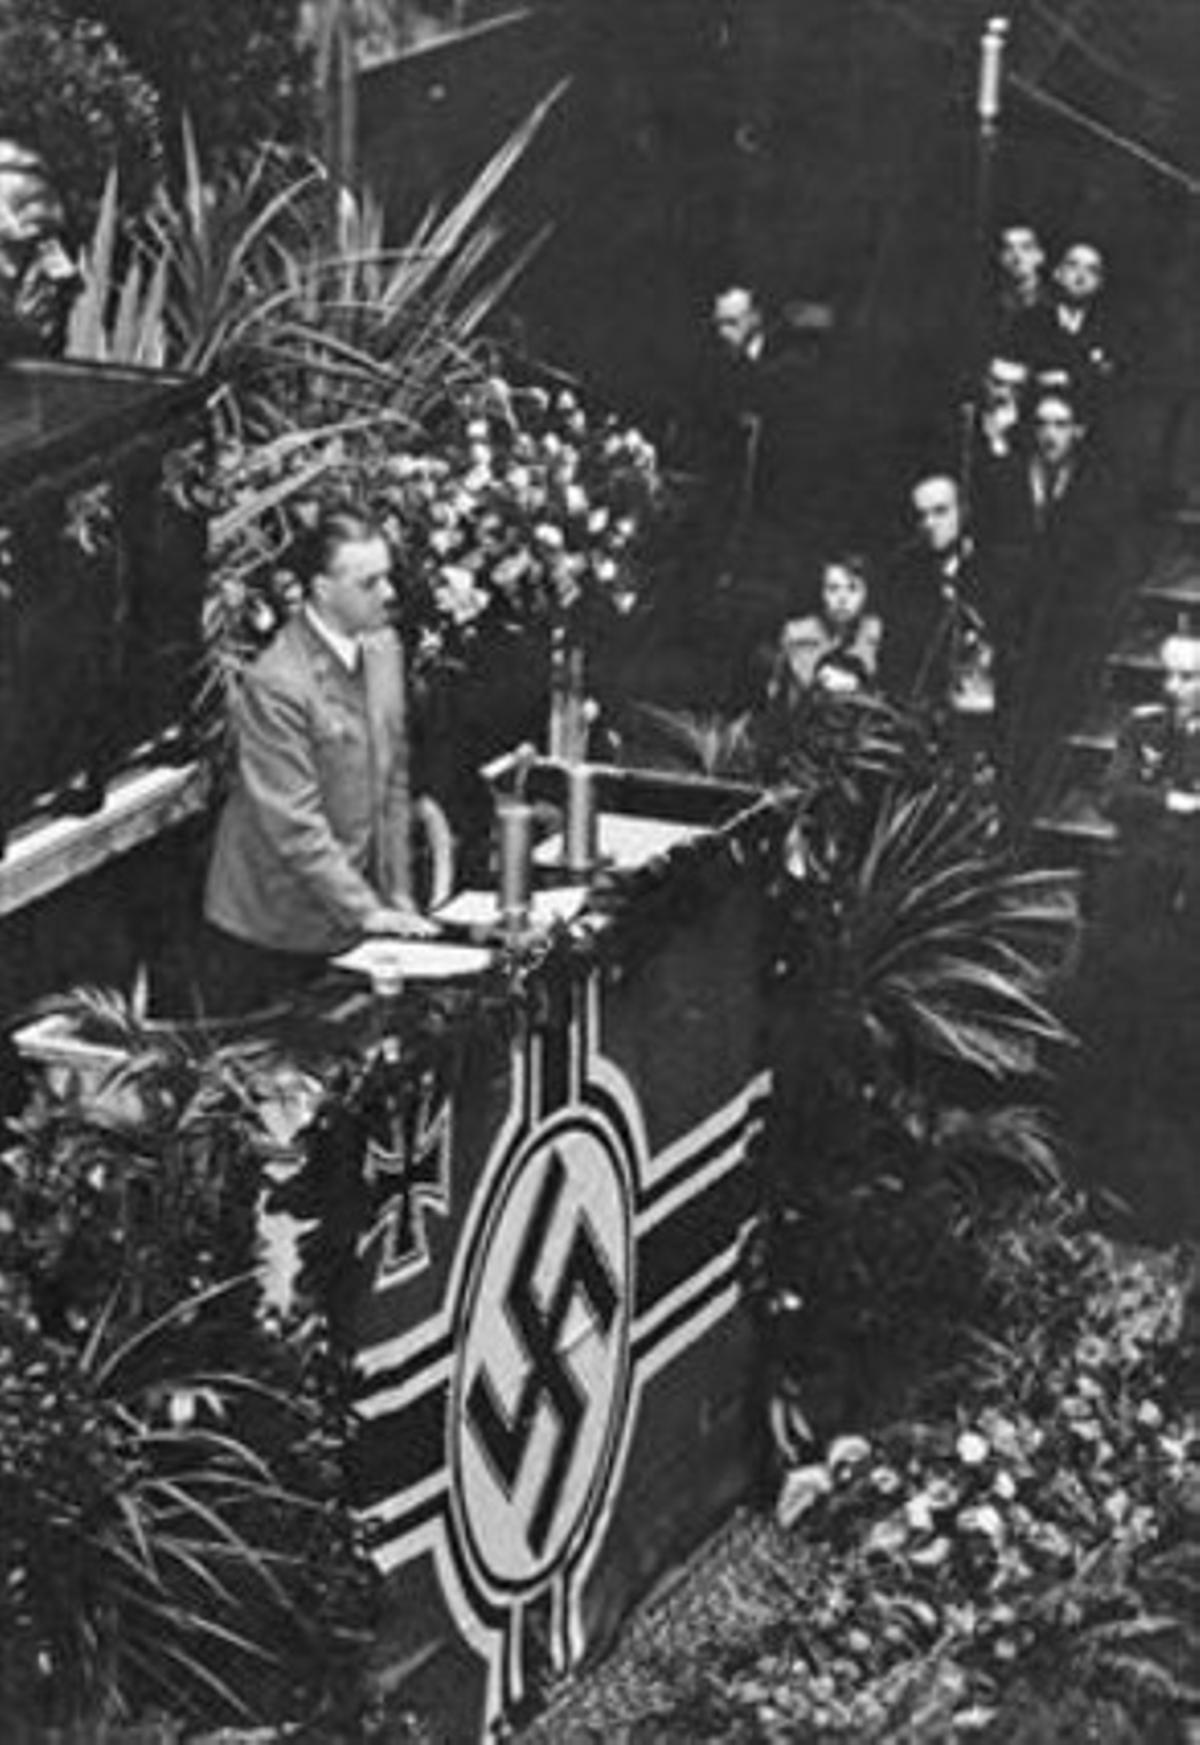 Rosenberg fa un discurs al’Assemblea Nacional francesa, el 18 de novembre de 1940, davant representants de la Wehrmacht i el partit nazi.